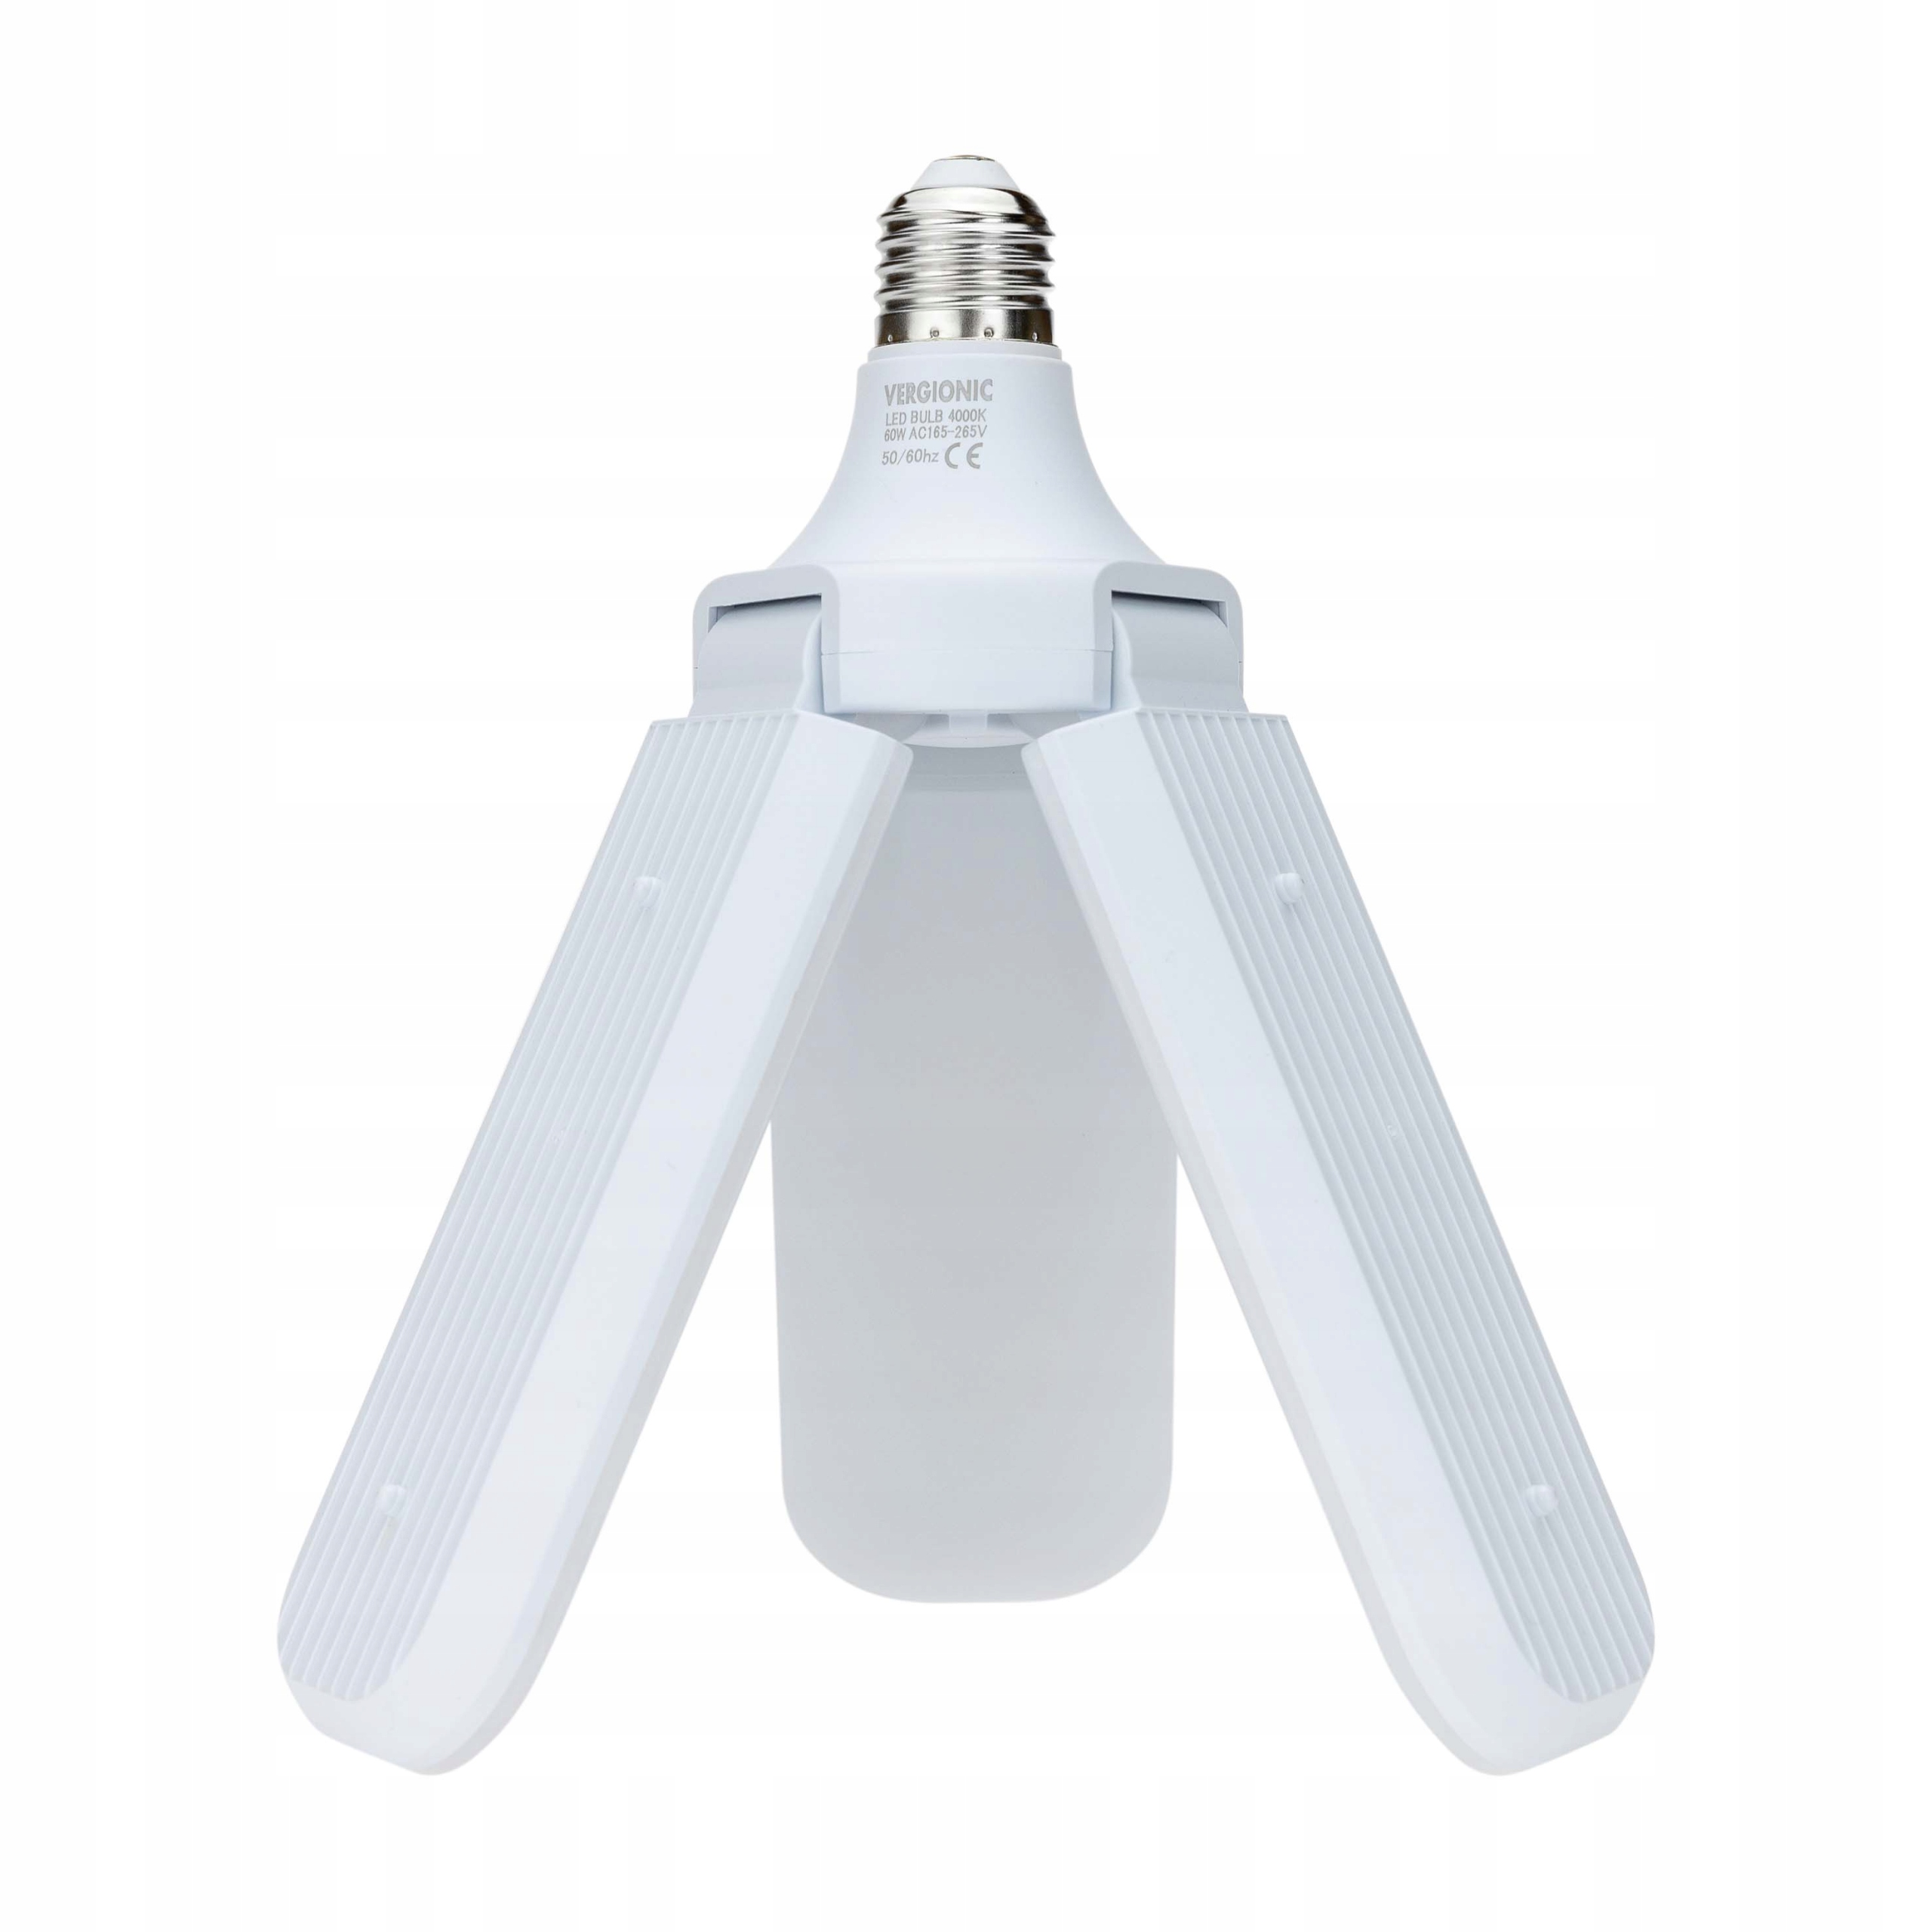 Żarówka składana LED trójramienna 30W VERGIONIC Barwa światła biały neutralny